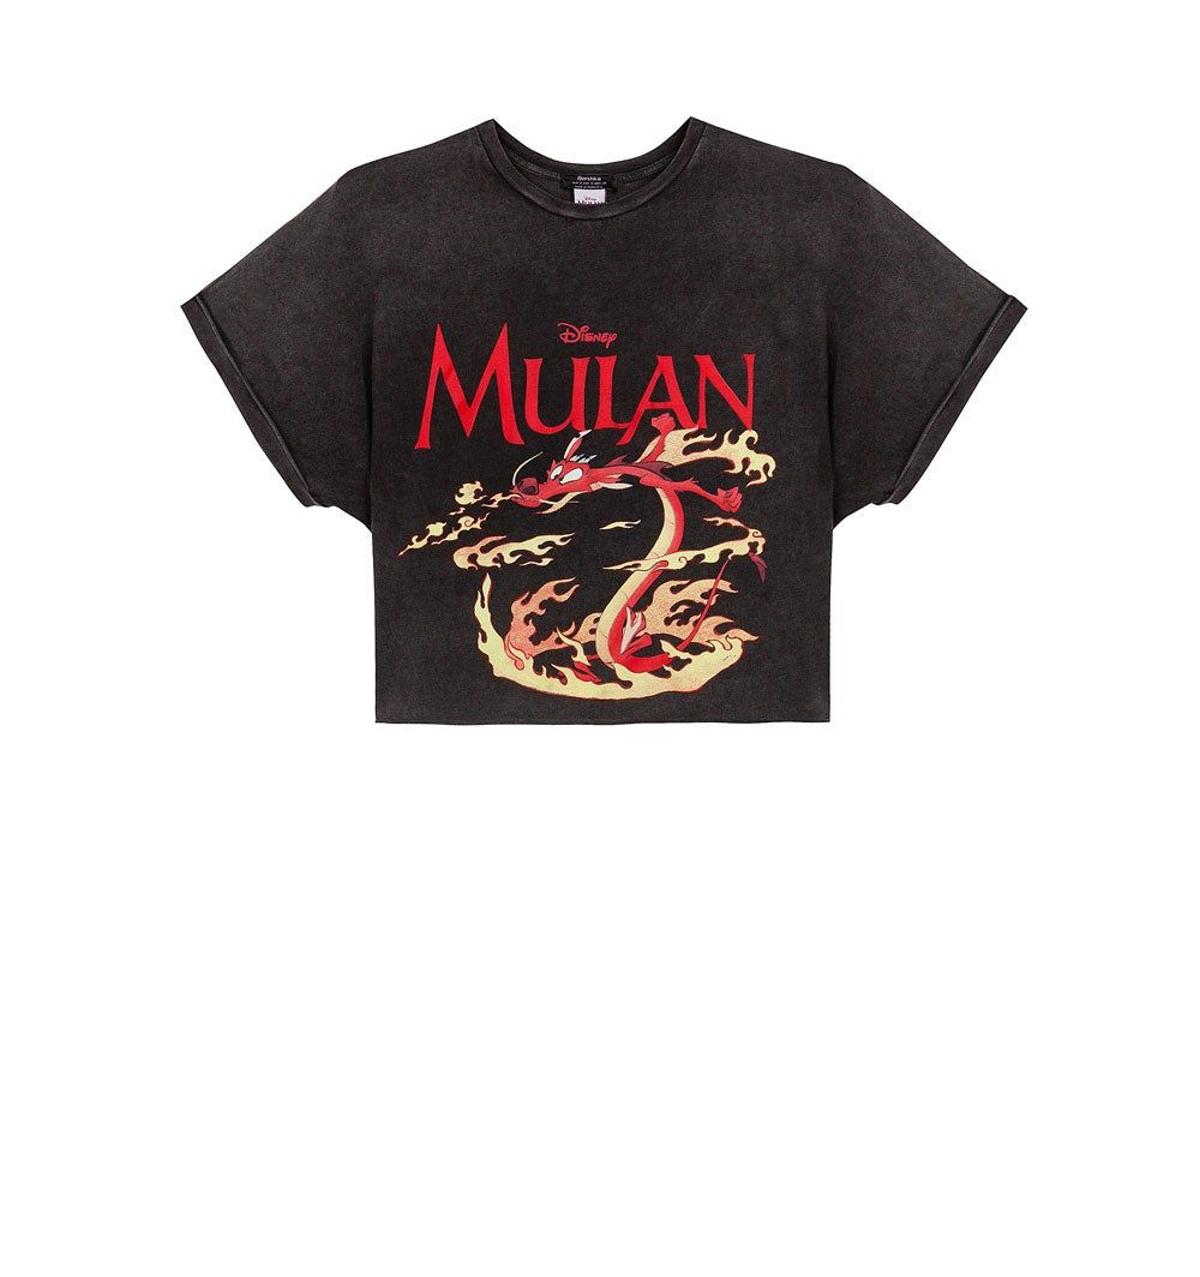 Camiseta cropped de Mulán de Bershka. (Precio: 12, 99 euros)